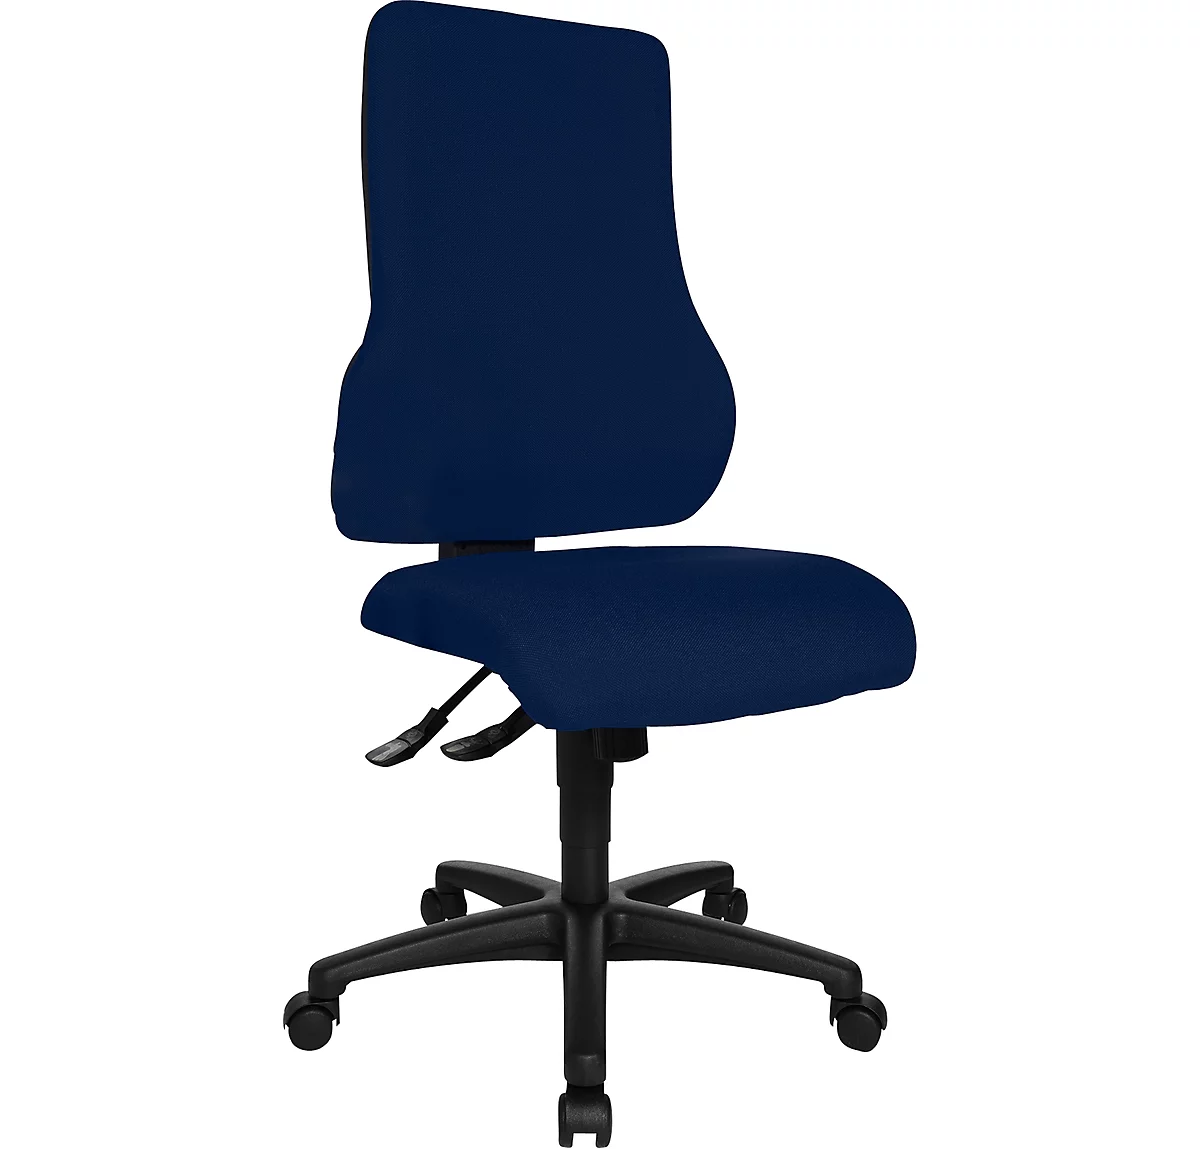 Topstar Bürostuhl TOP POINT, Synchronmechanik, ohne Armlehnen, hohe ergonomische Rückenlehne, blau